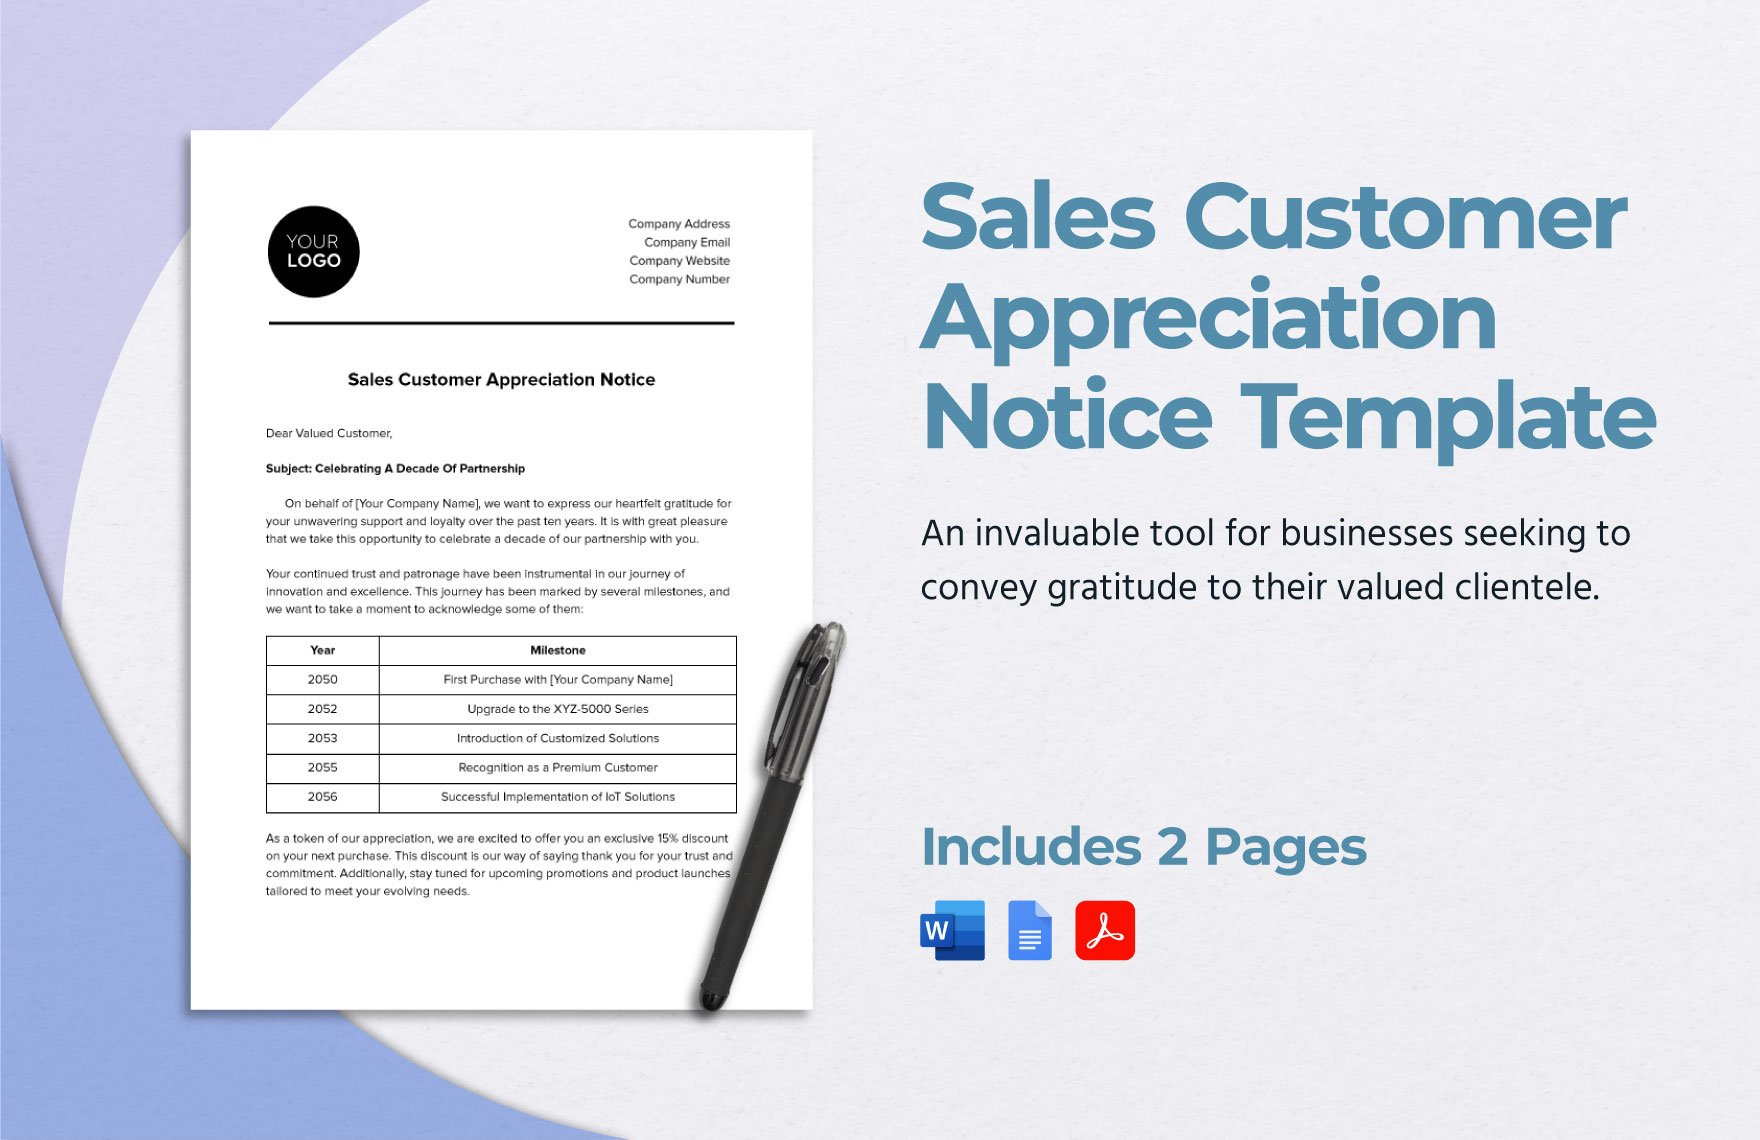 Sales Customer Appreciation Notice Template